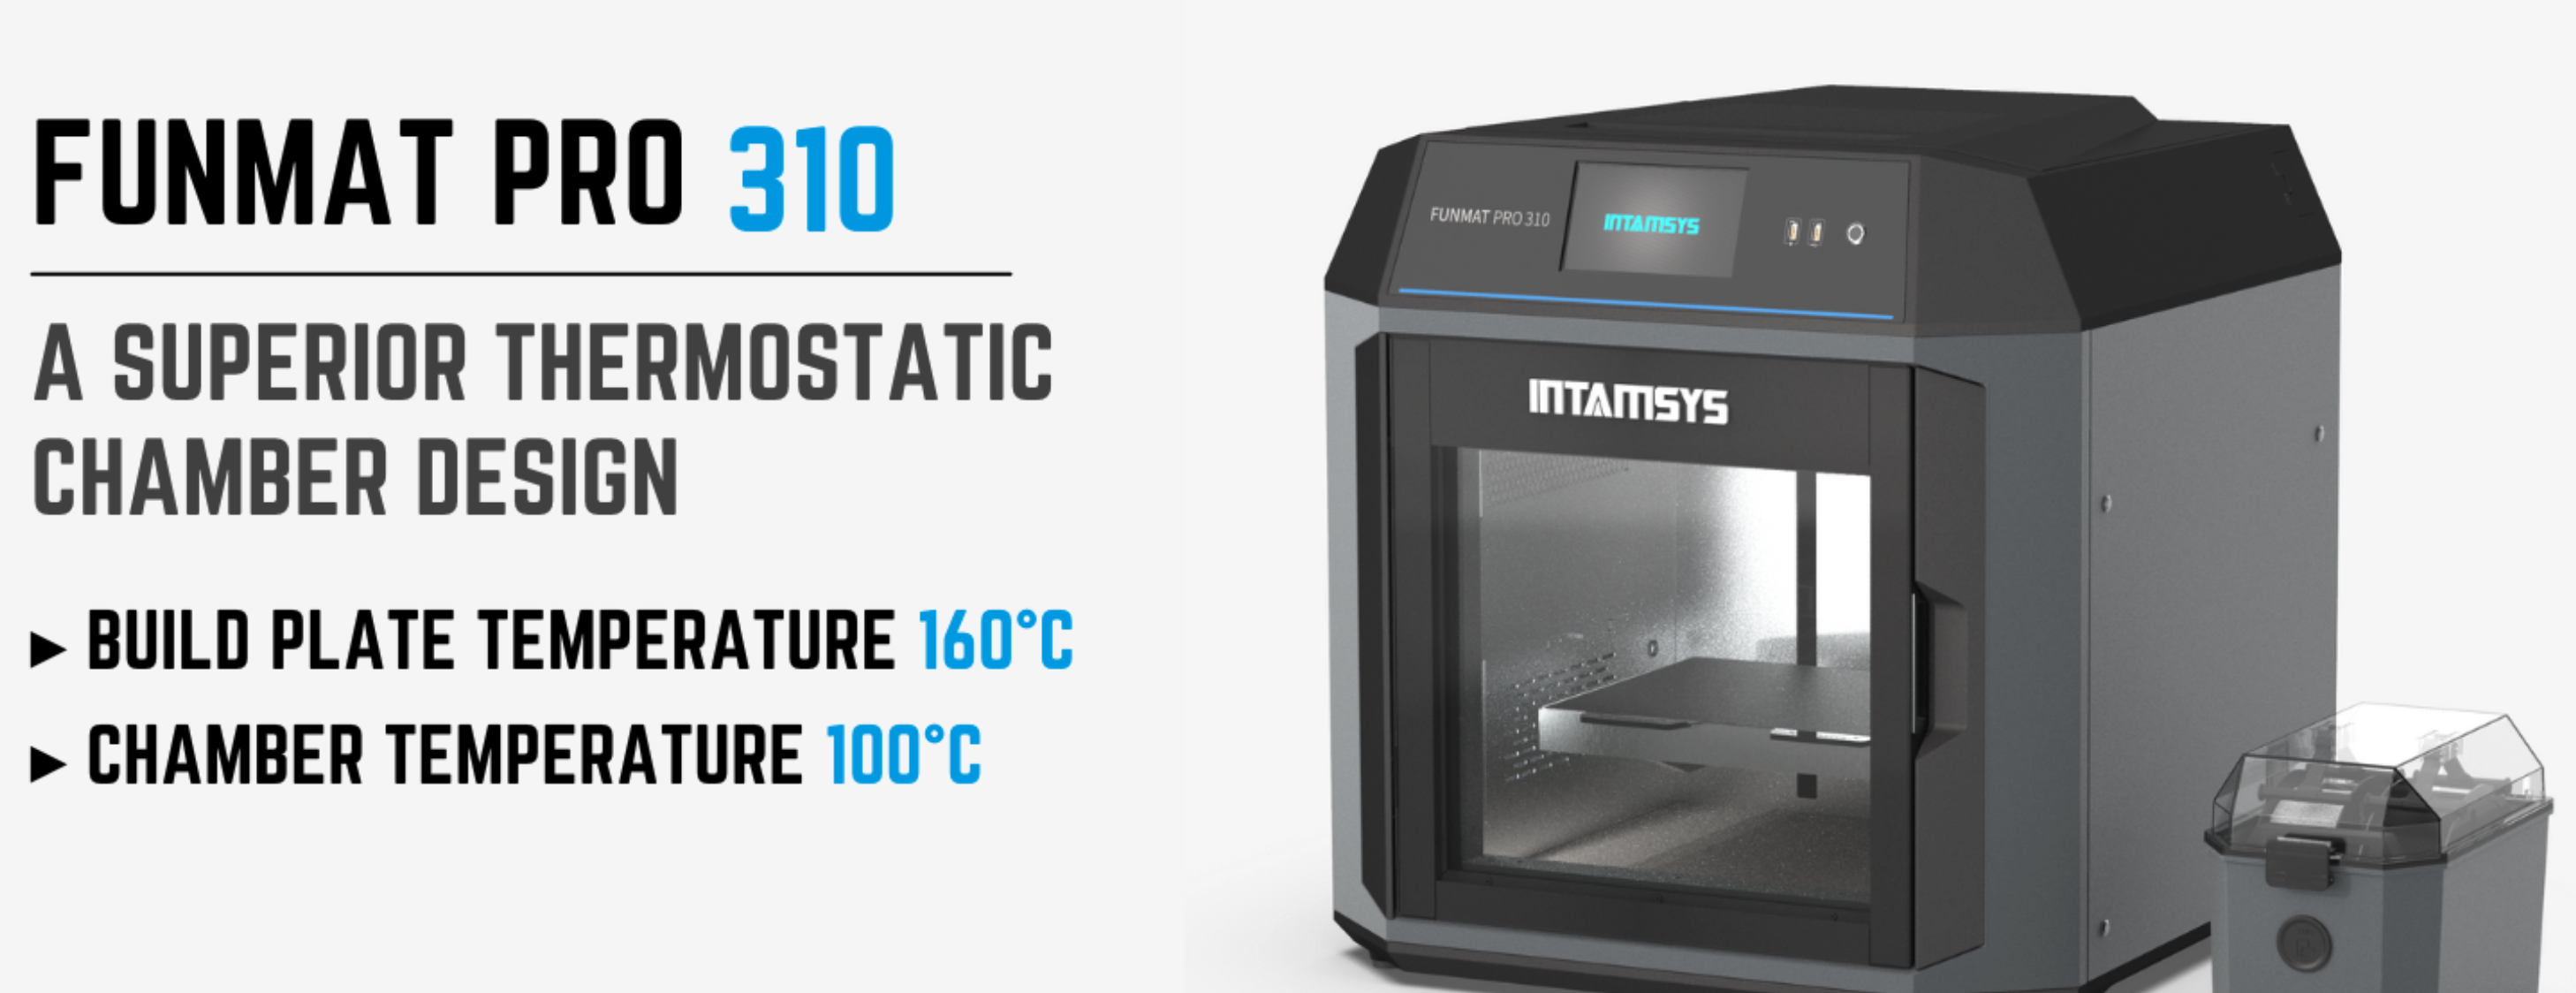 INTAMSYS FUNMAT PRO 310 고성능 산업용 3D프린터 판매처 덕유항공